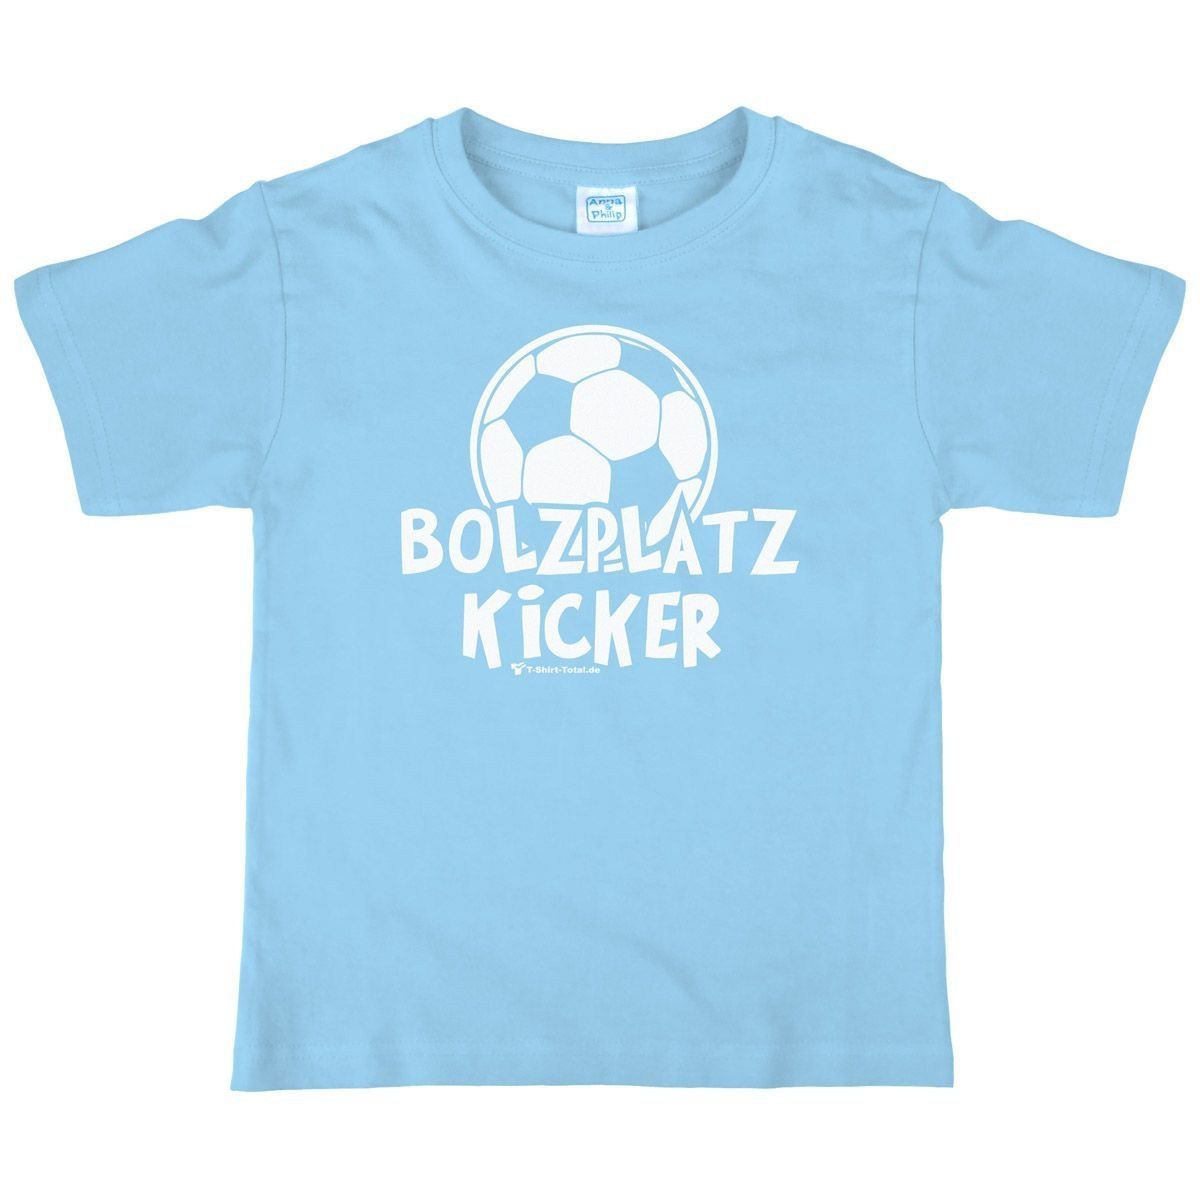 Bolzplatz Kicker Kinder T-Shirt hellblau 134 / 140